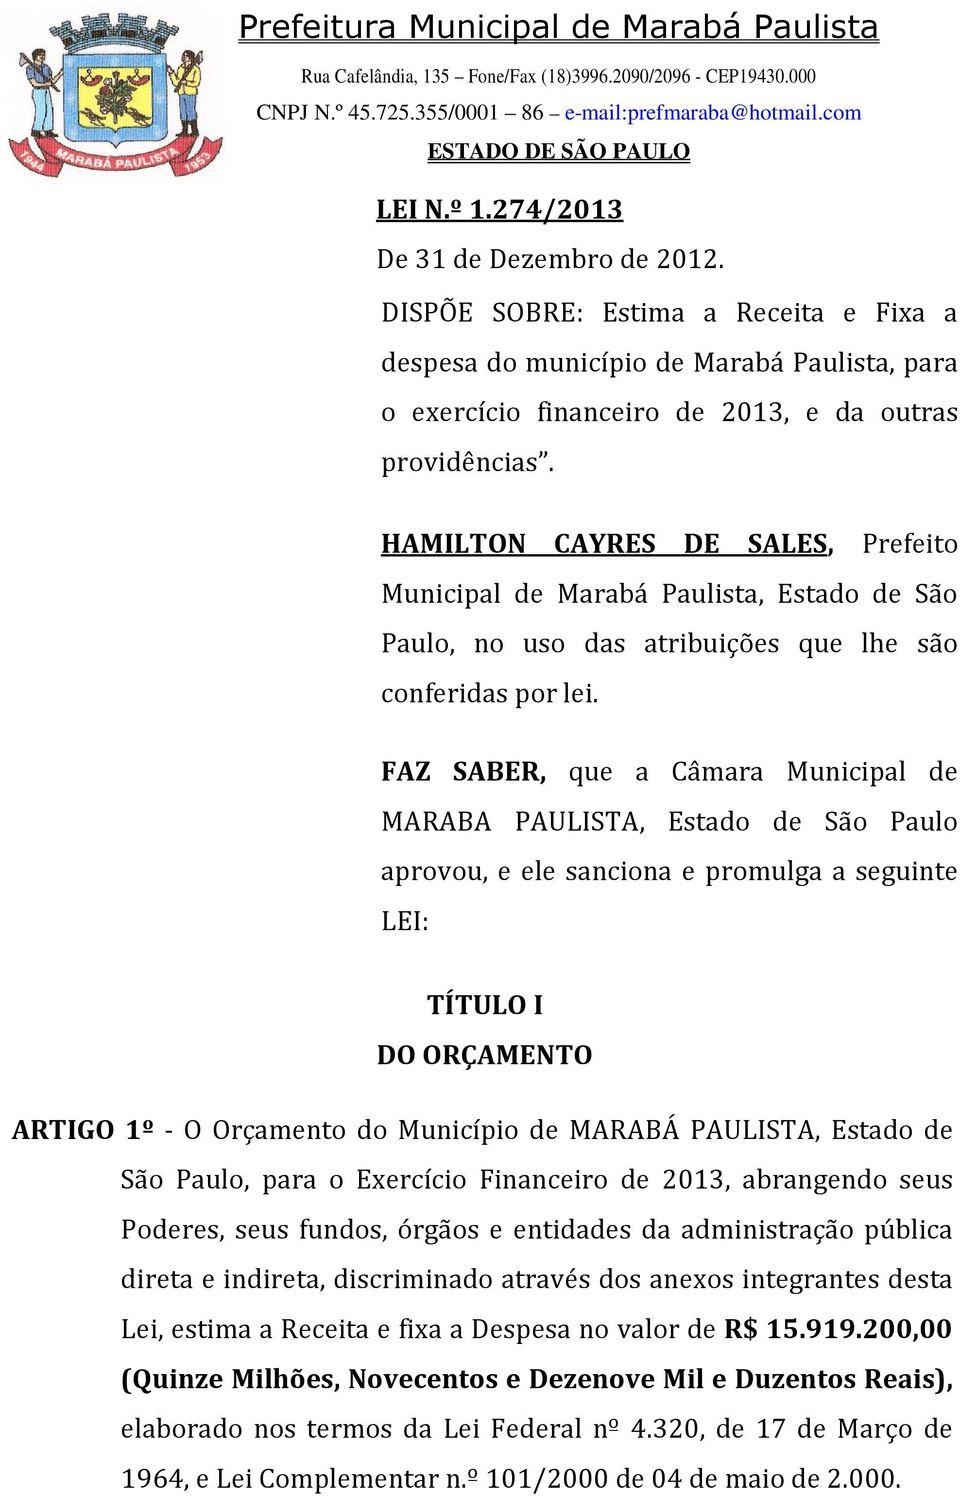 FAZ SABER, que a Câmara Municipal de MARABA PAULISTA, Estado de São Paulo aprovou, e ele sanciona e promulga a seguinte LEI: TÍTULO I DO ORÇAMENTO ARTIGO 1º - O Orçamento do Município de MARABÁ